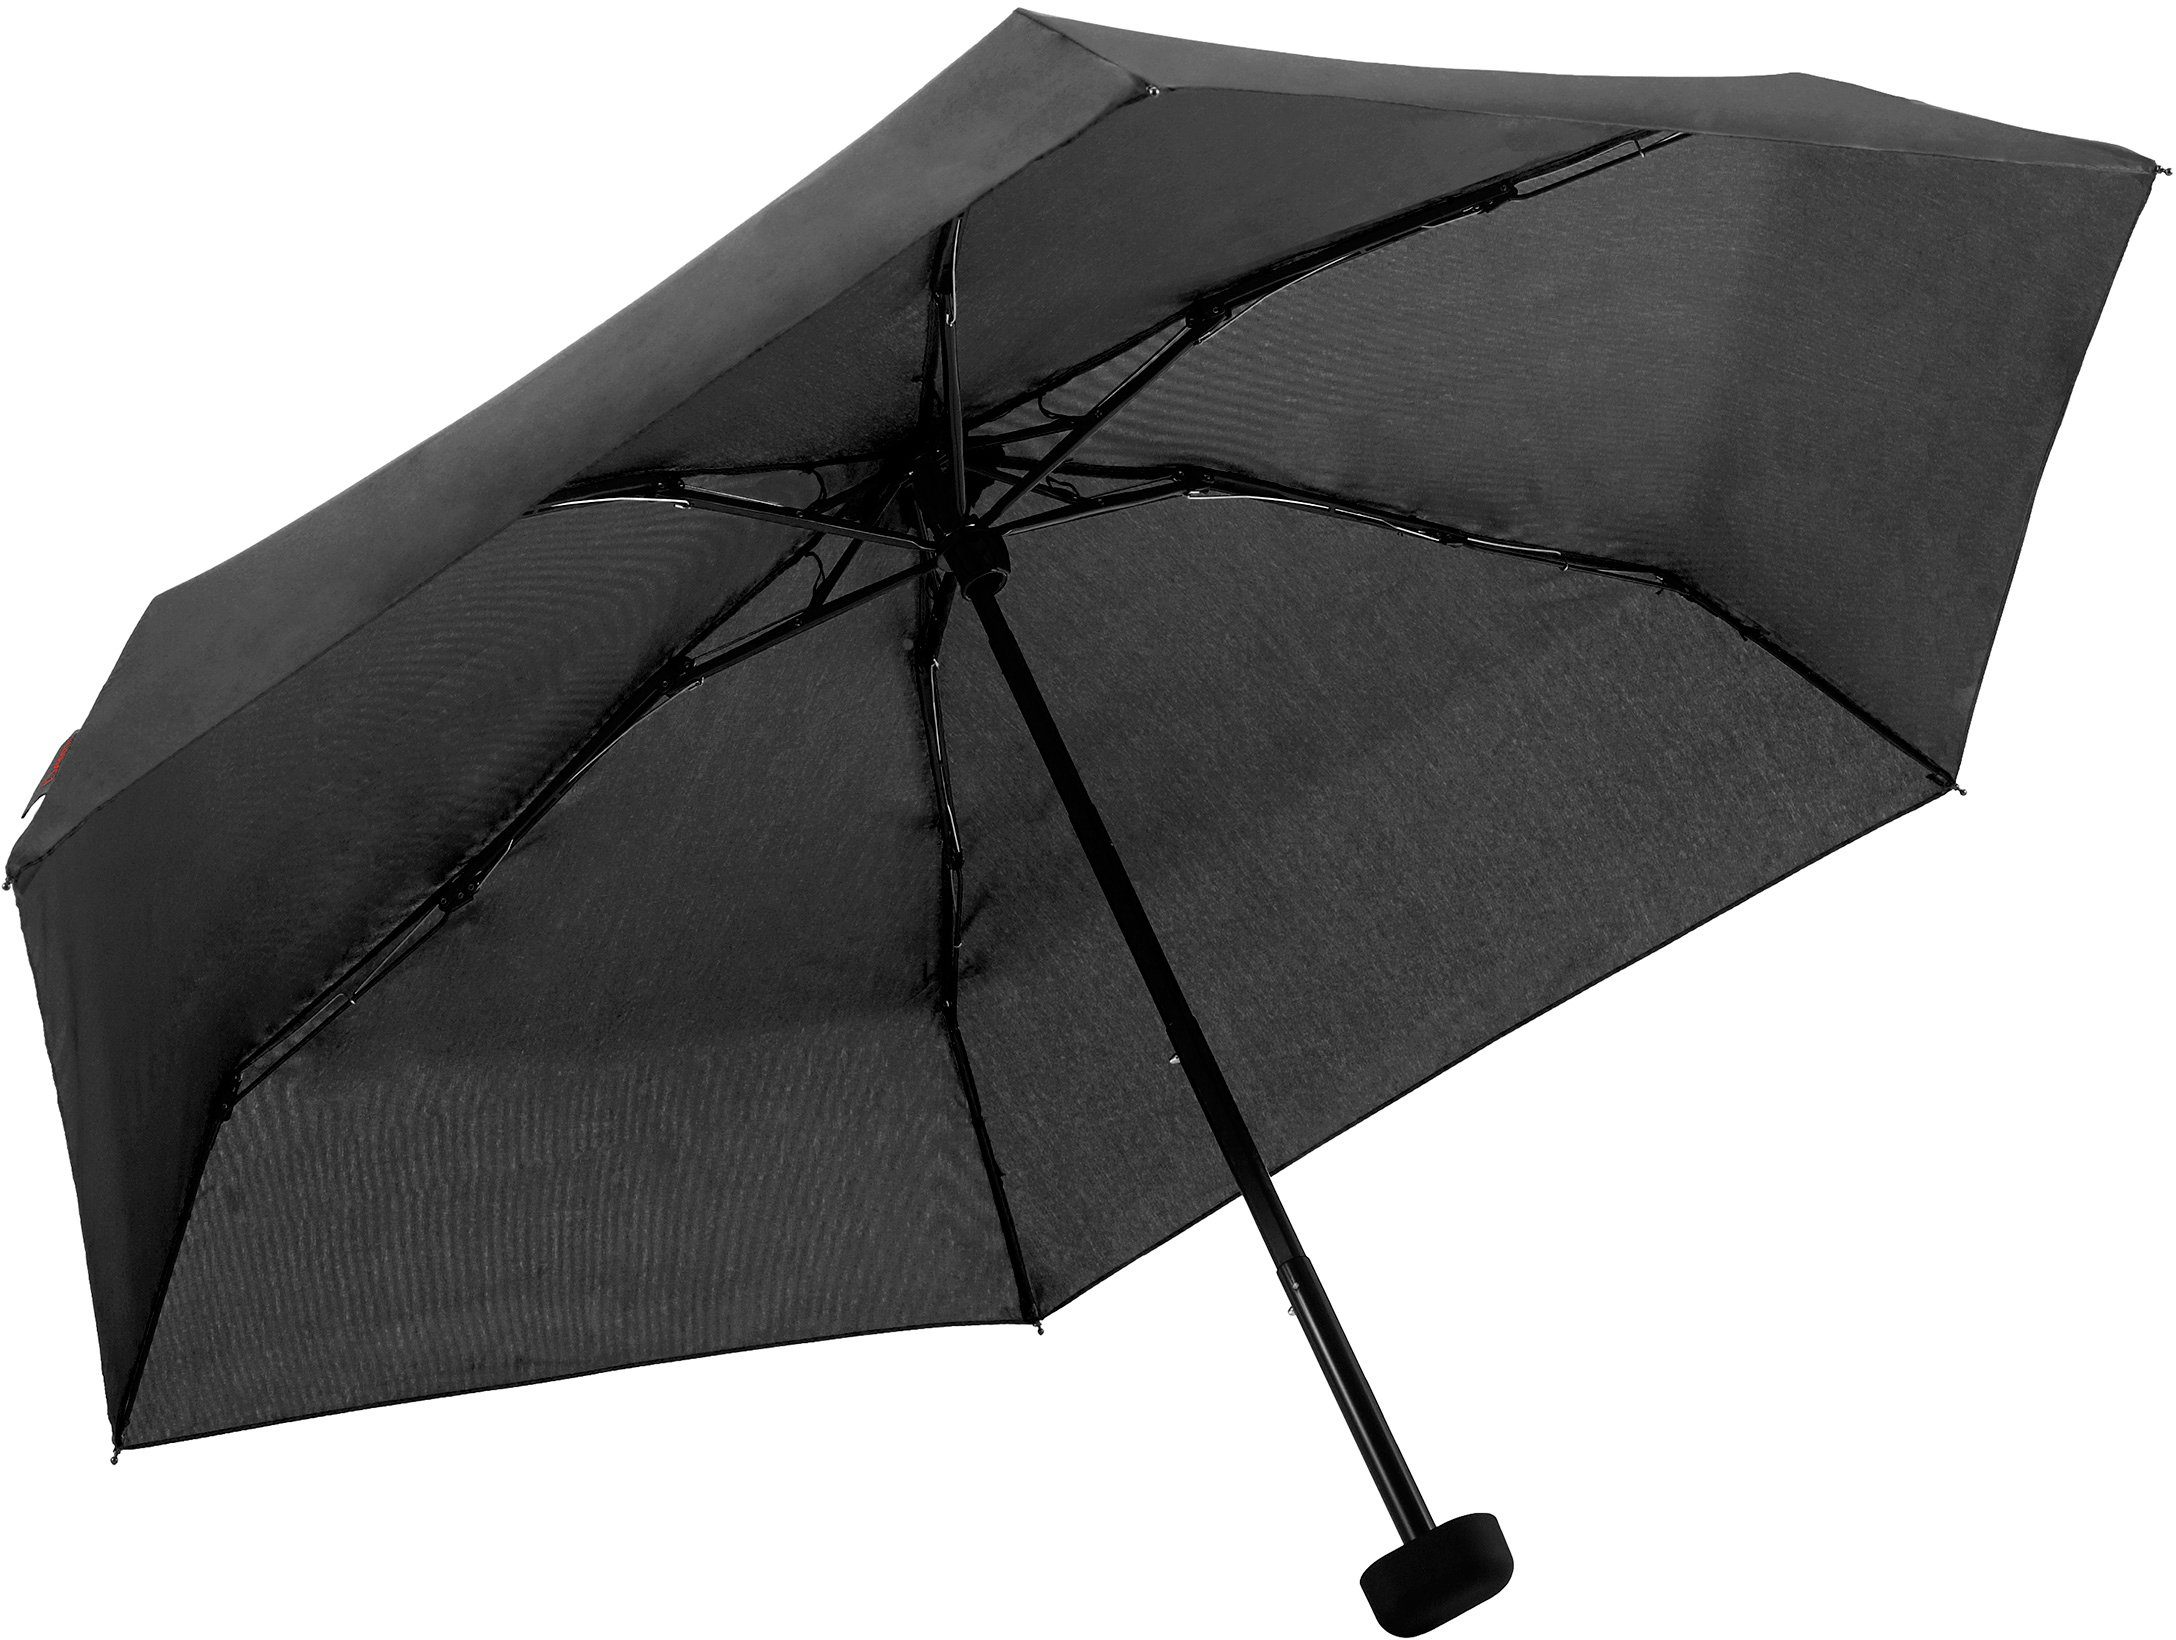 Taschenregenschirm kurz und flach schwarz, EuroSCHIRM® Dainty, extra